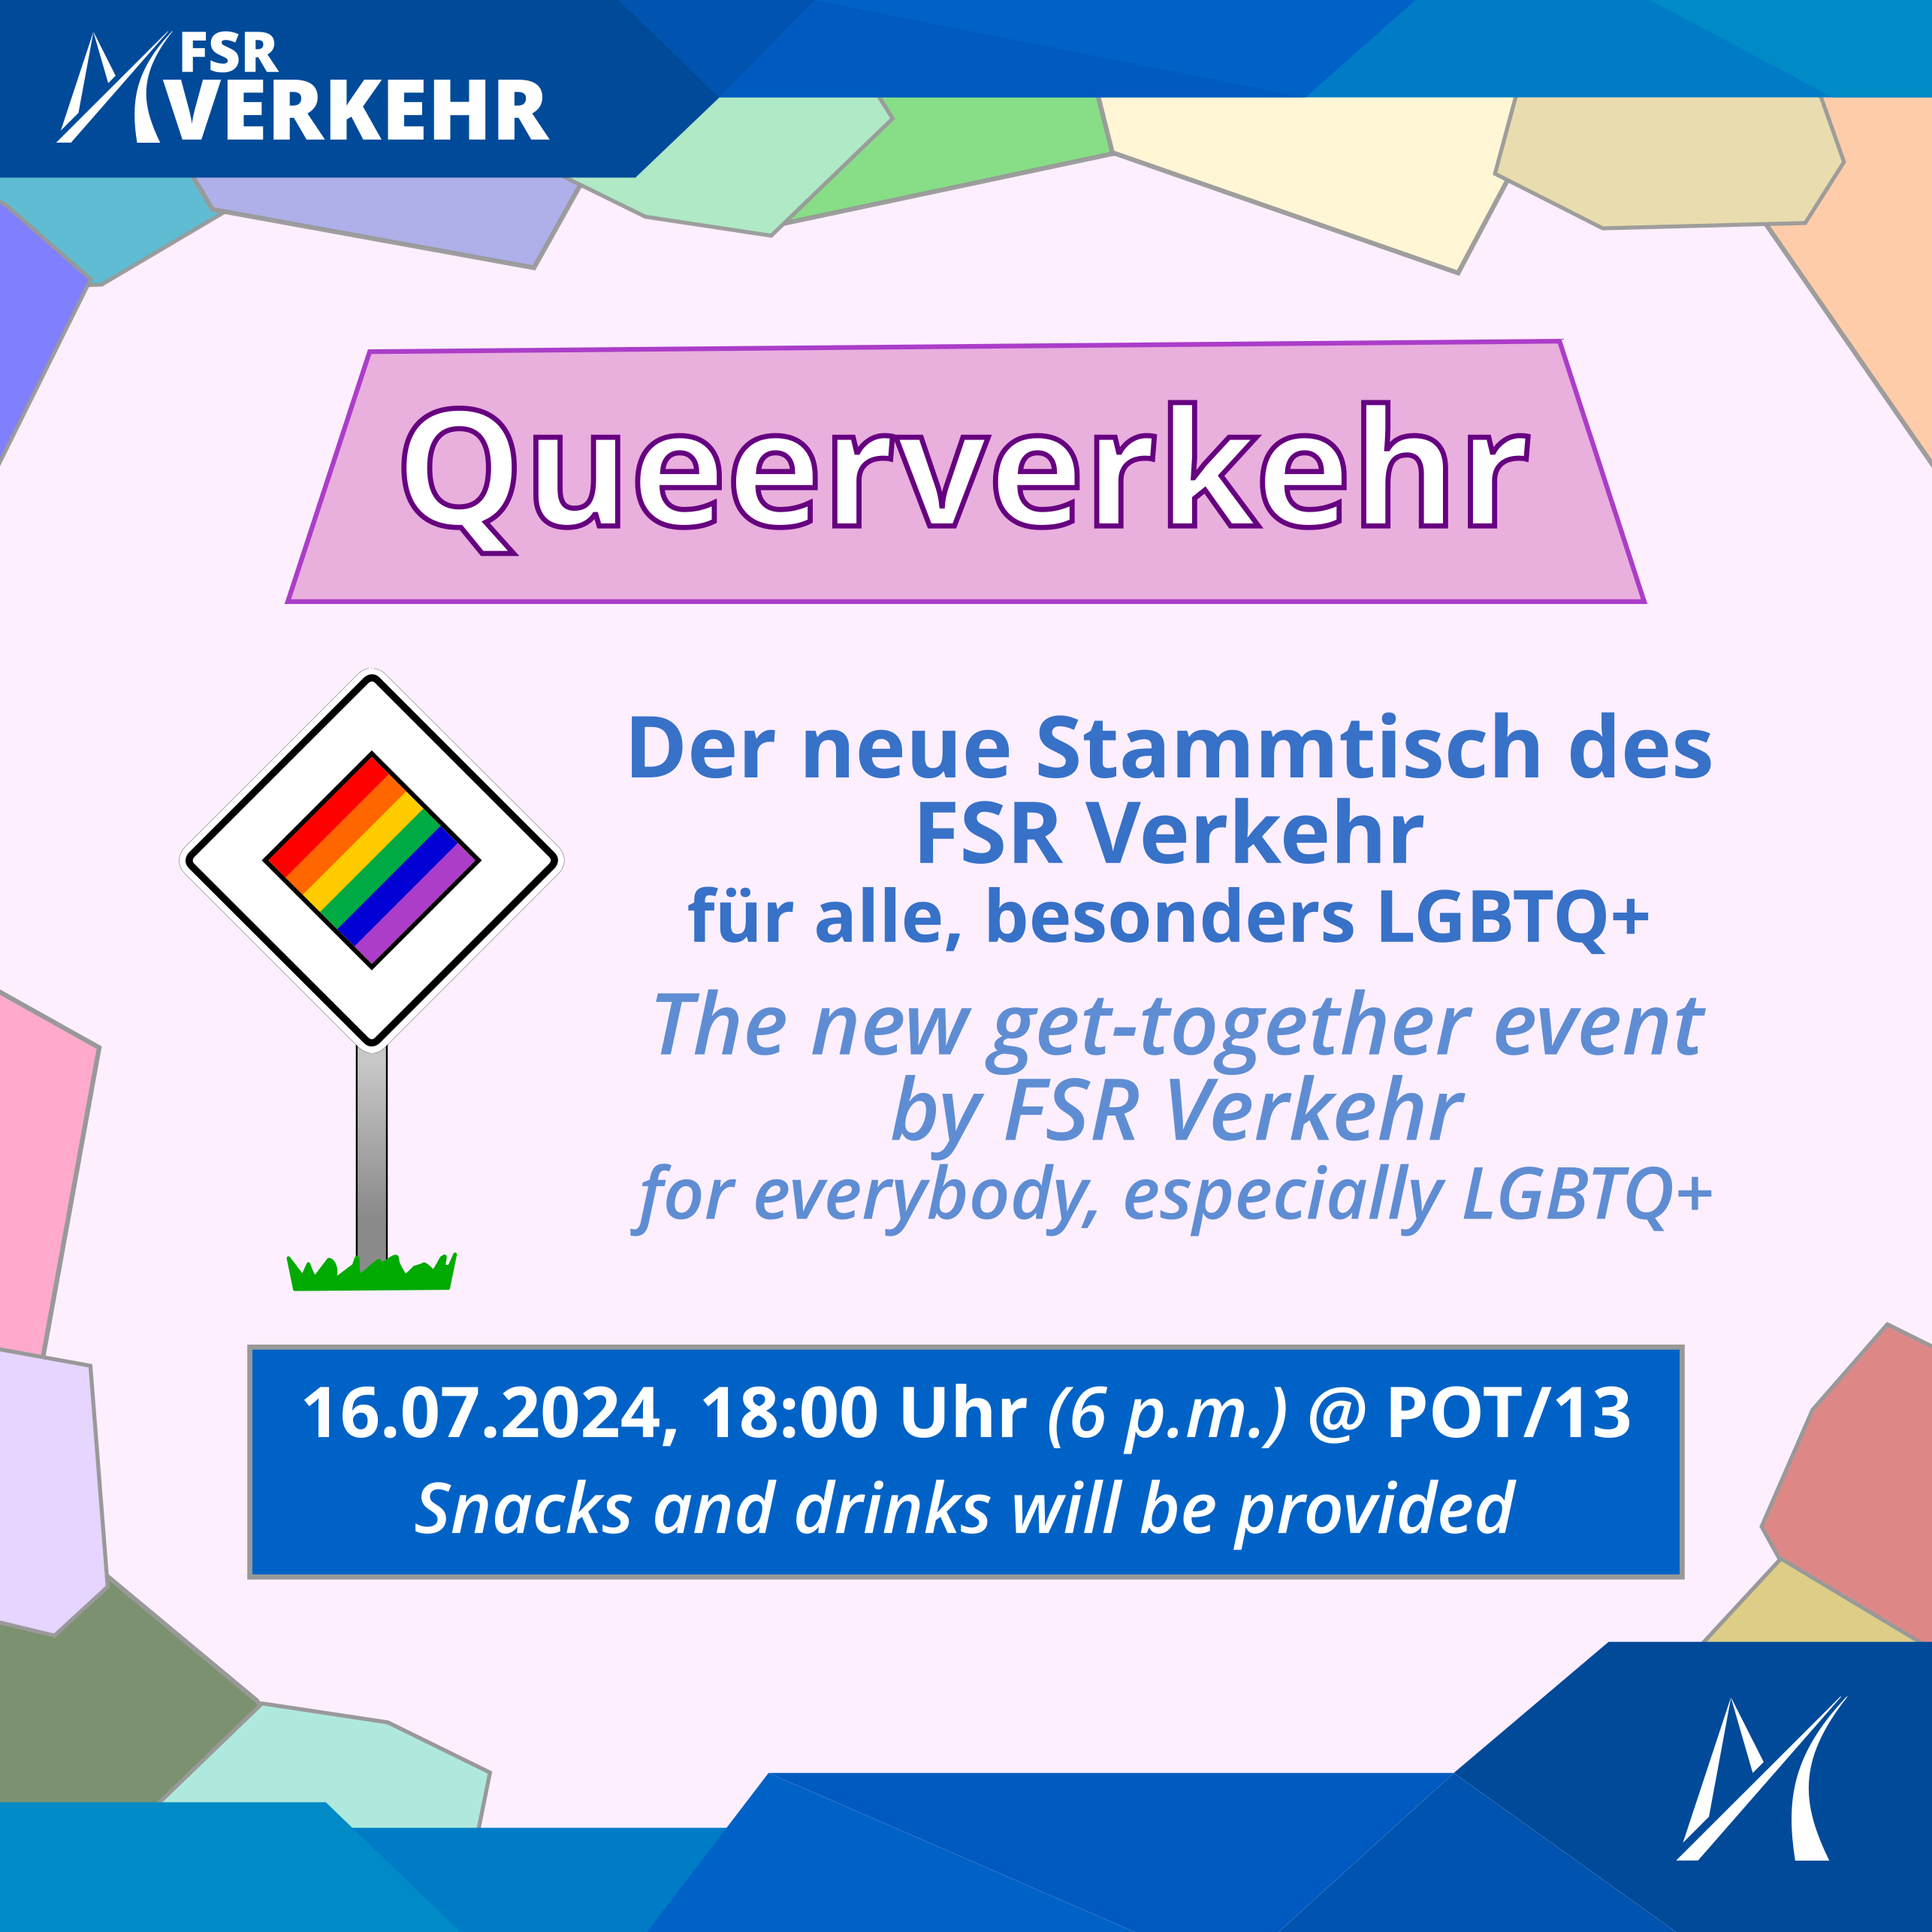 Queerverkehr-Stammtisch am 16. Juli 2024